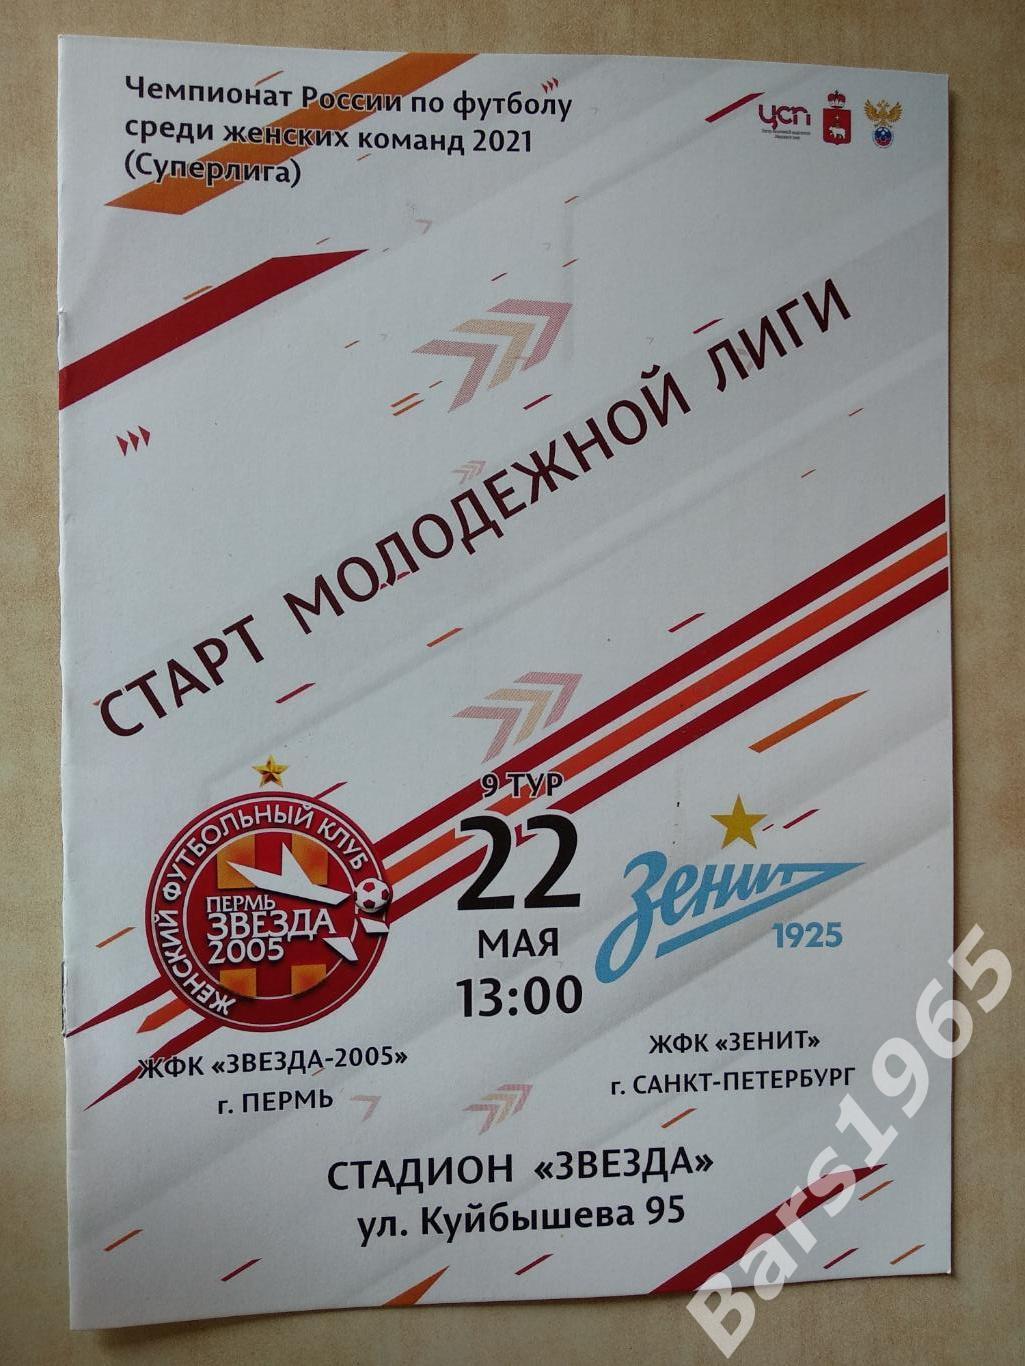 Звезда-2005 Пермь - Зенит Санкт-Петербург 2021 Женщины